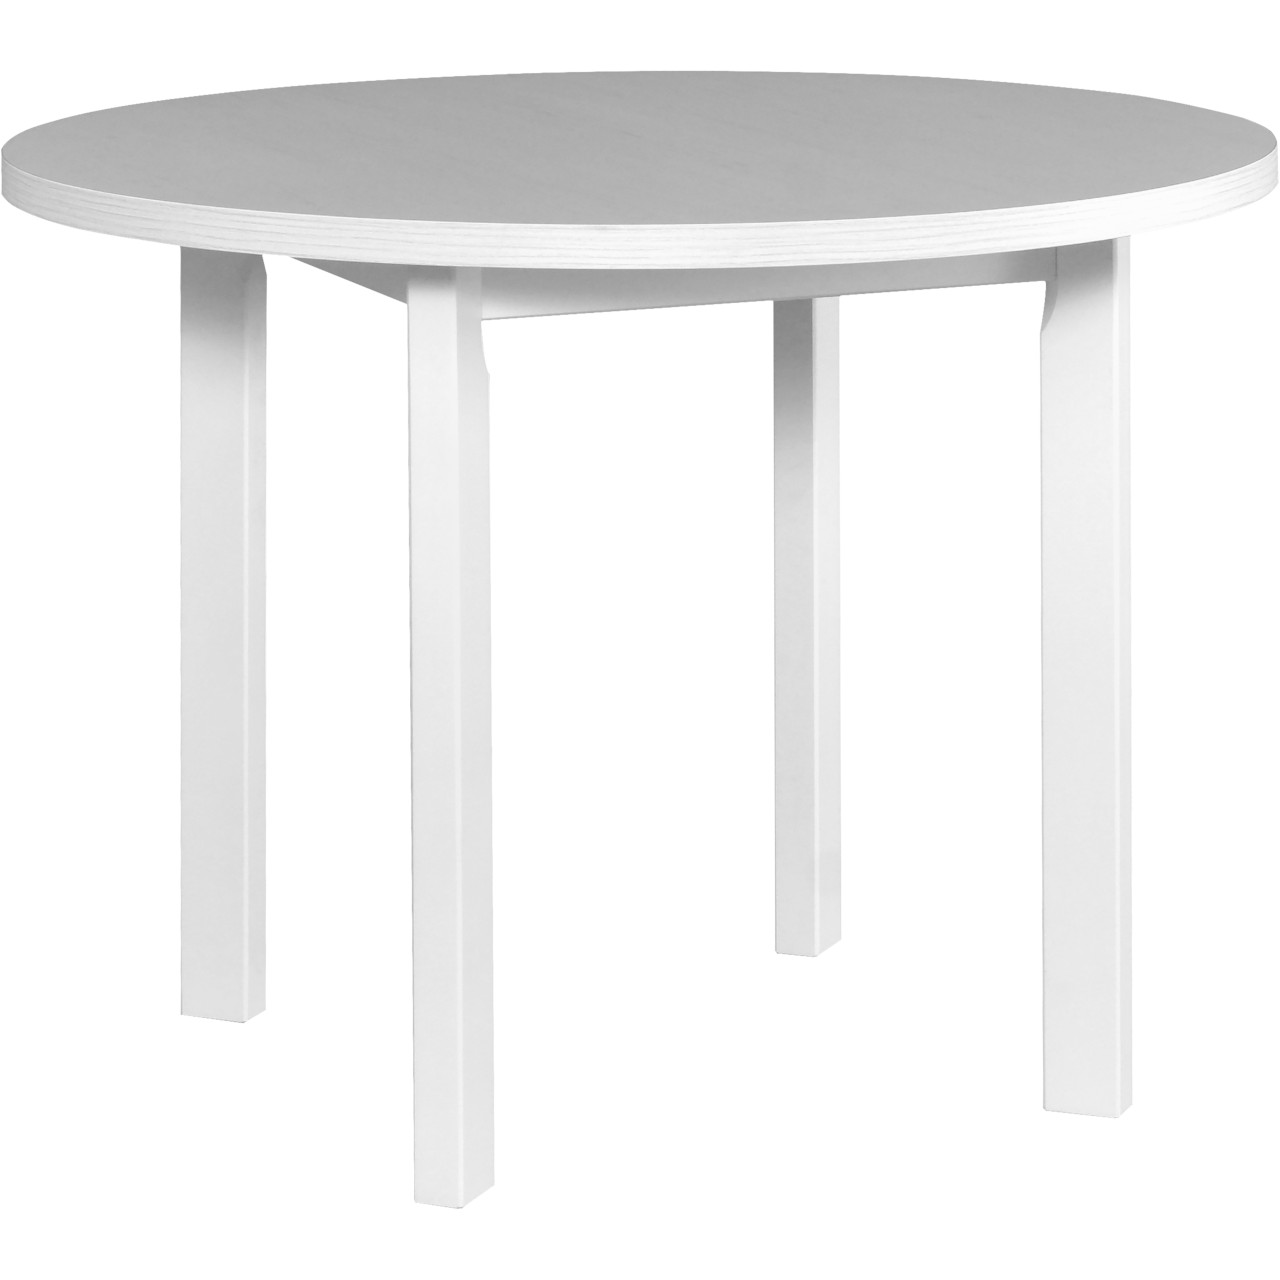 Table POLI 2 100x100 white laminate